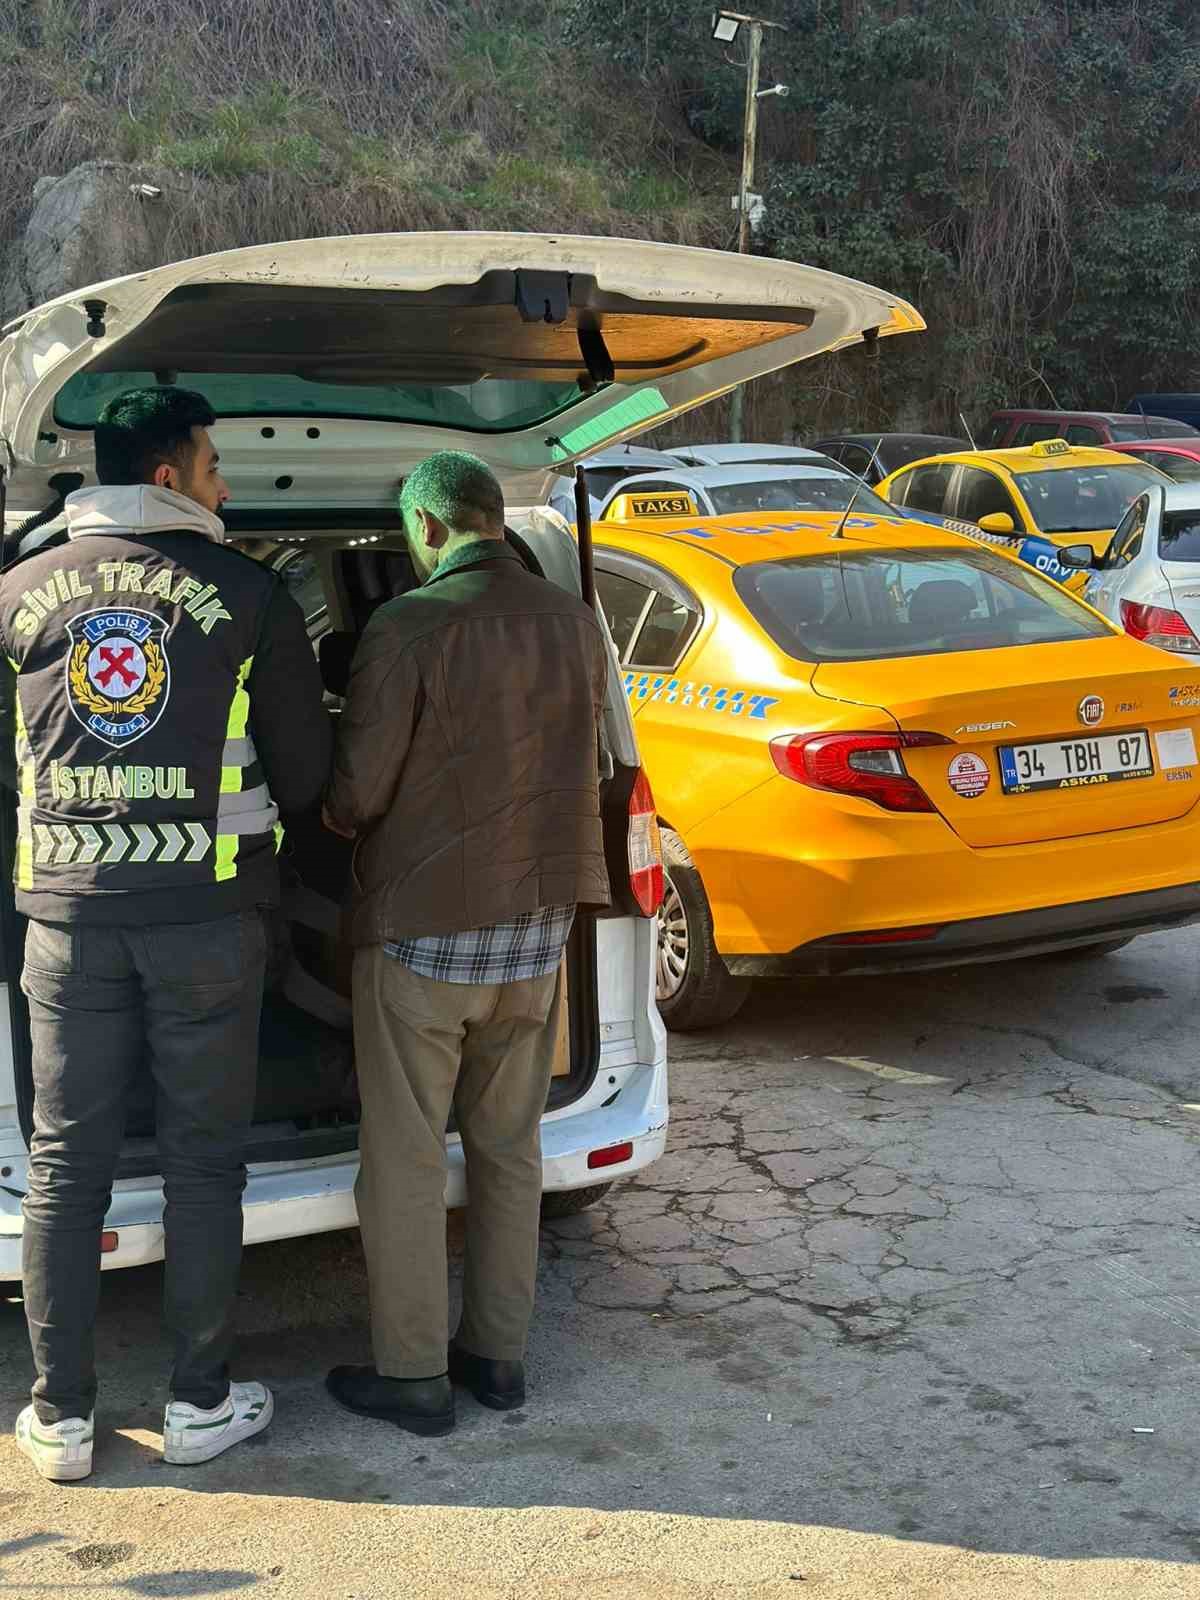 besiktasta taksimetre acmayip cikan tartismada yolculari indiren sofore ceza yagdi 0 CVUyUB3B